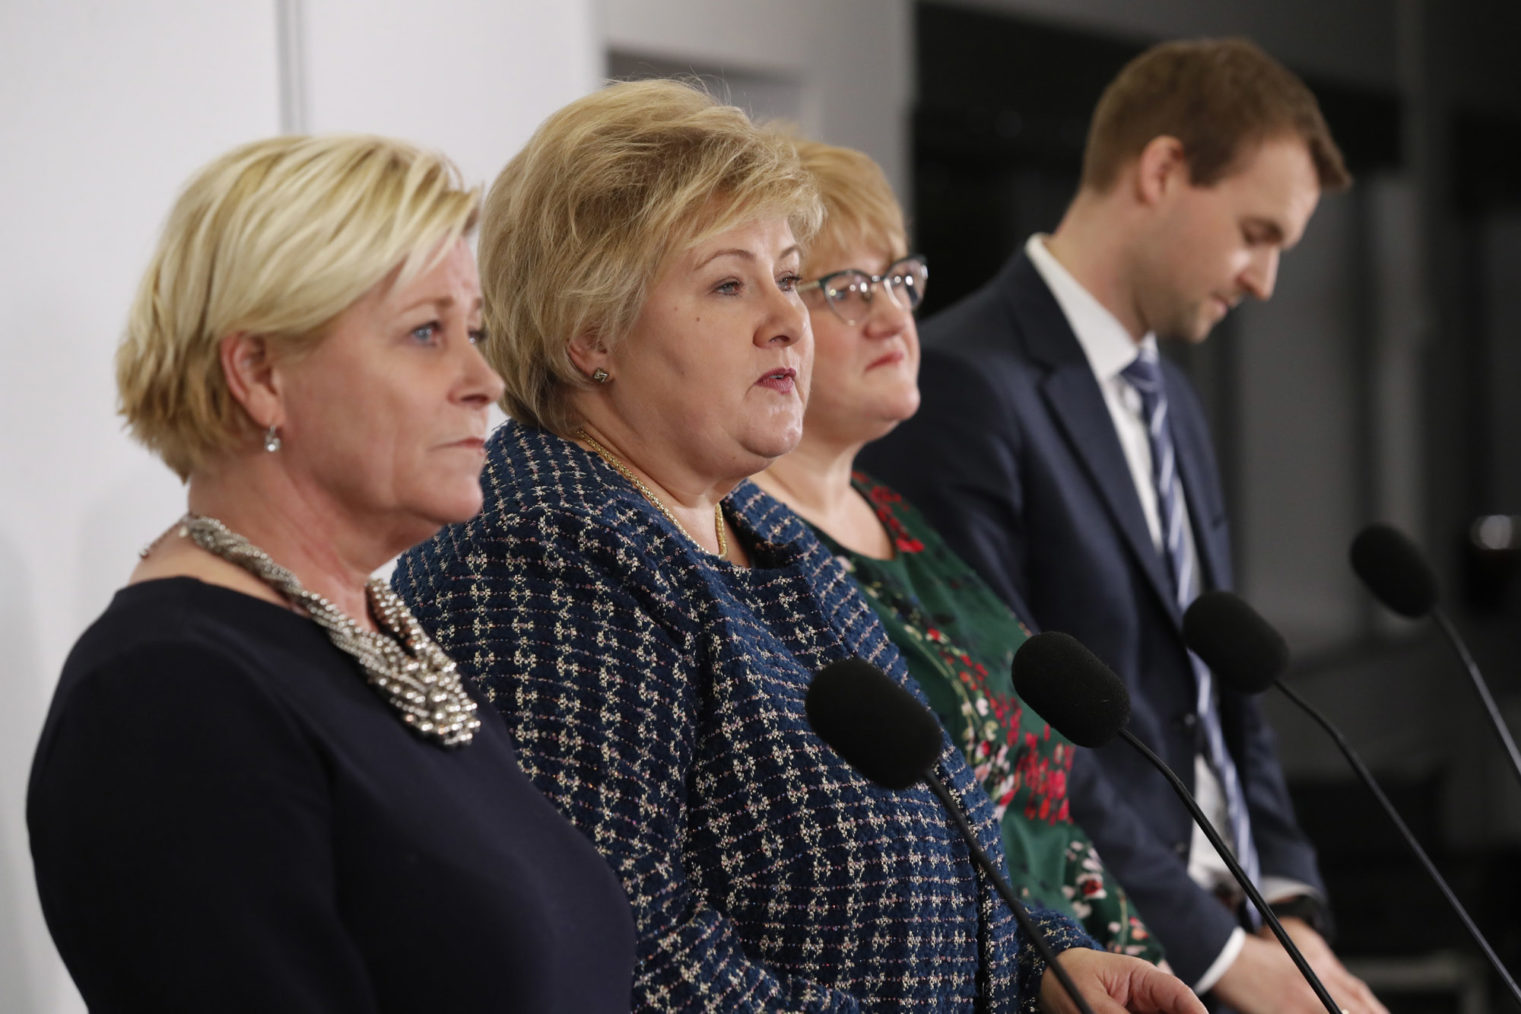 De fire fotografert sammen på pressekonferansen.